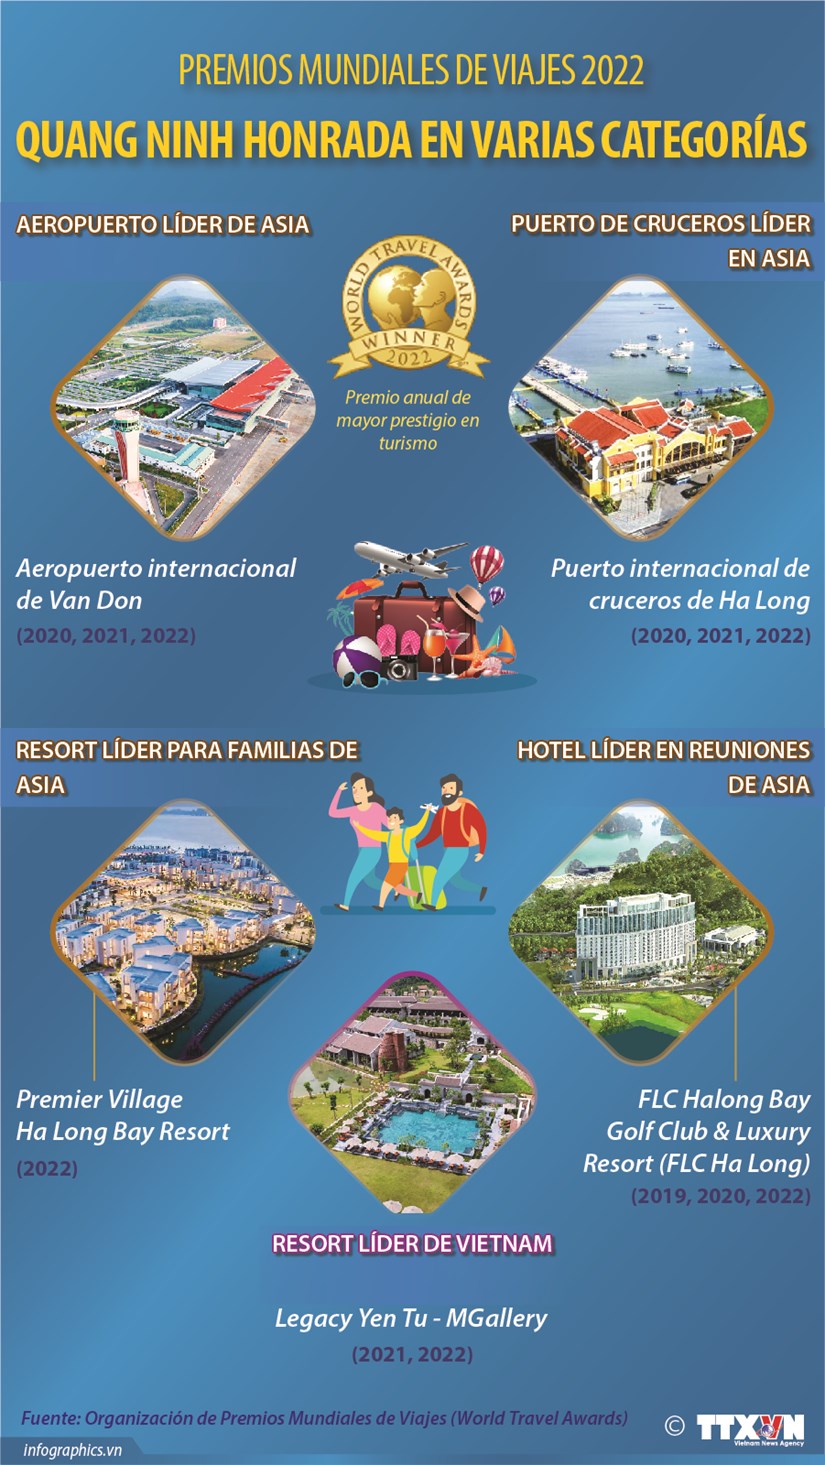 Premios Mundiales de Viajes 2022: Quang Ninh honrada en varias categorias hinh anh 1